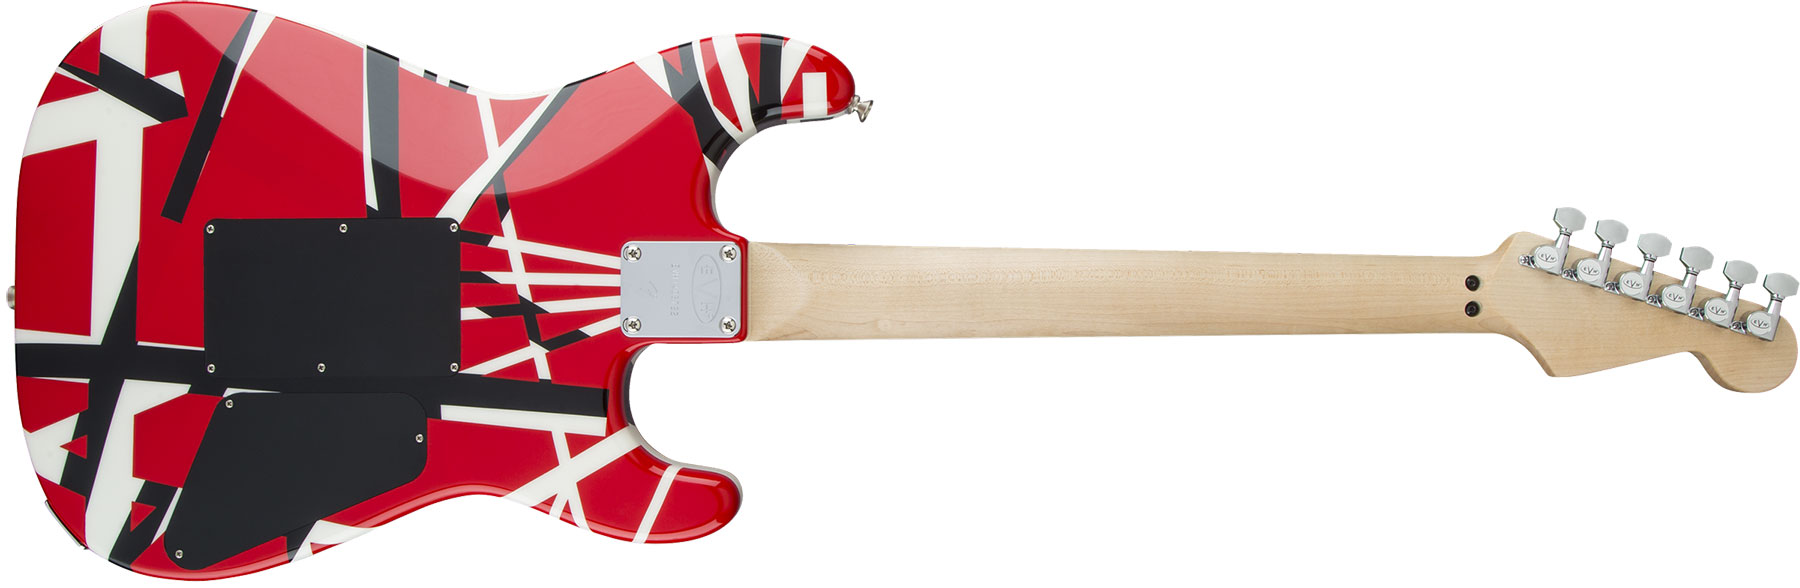 Evh Striped Series Lh Gaucher Signature H Fr Mn - Red Black White Stripes - E-Gitarre für Linkshänder - Variation 1